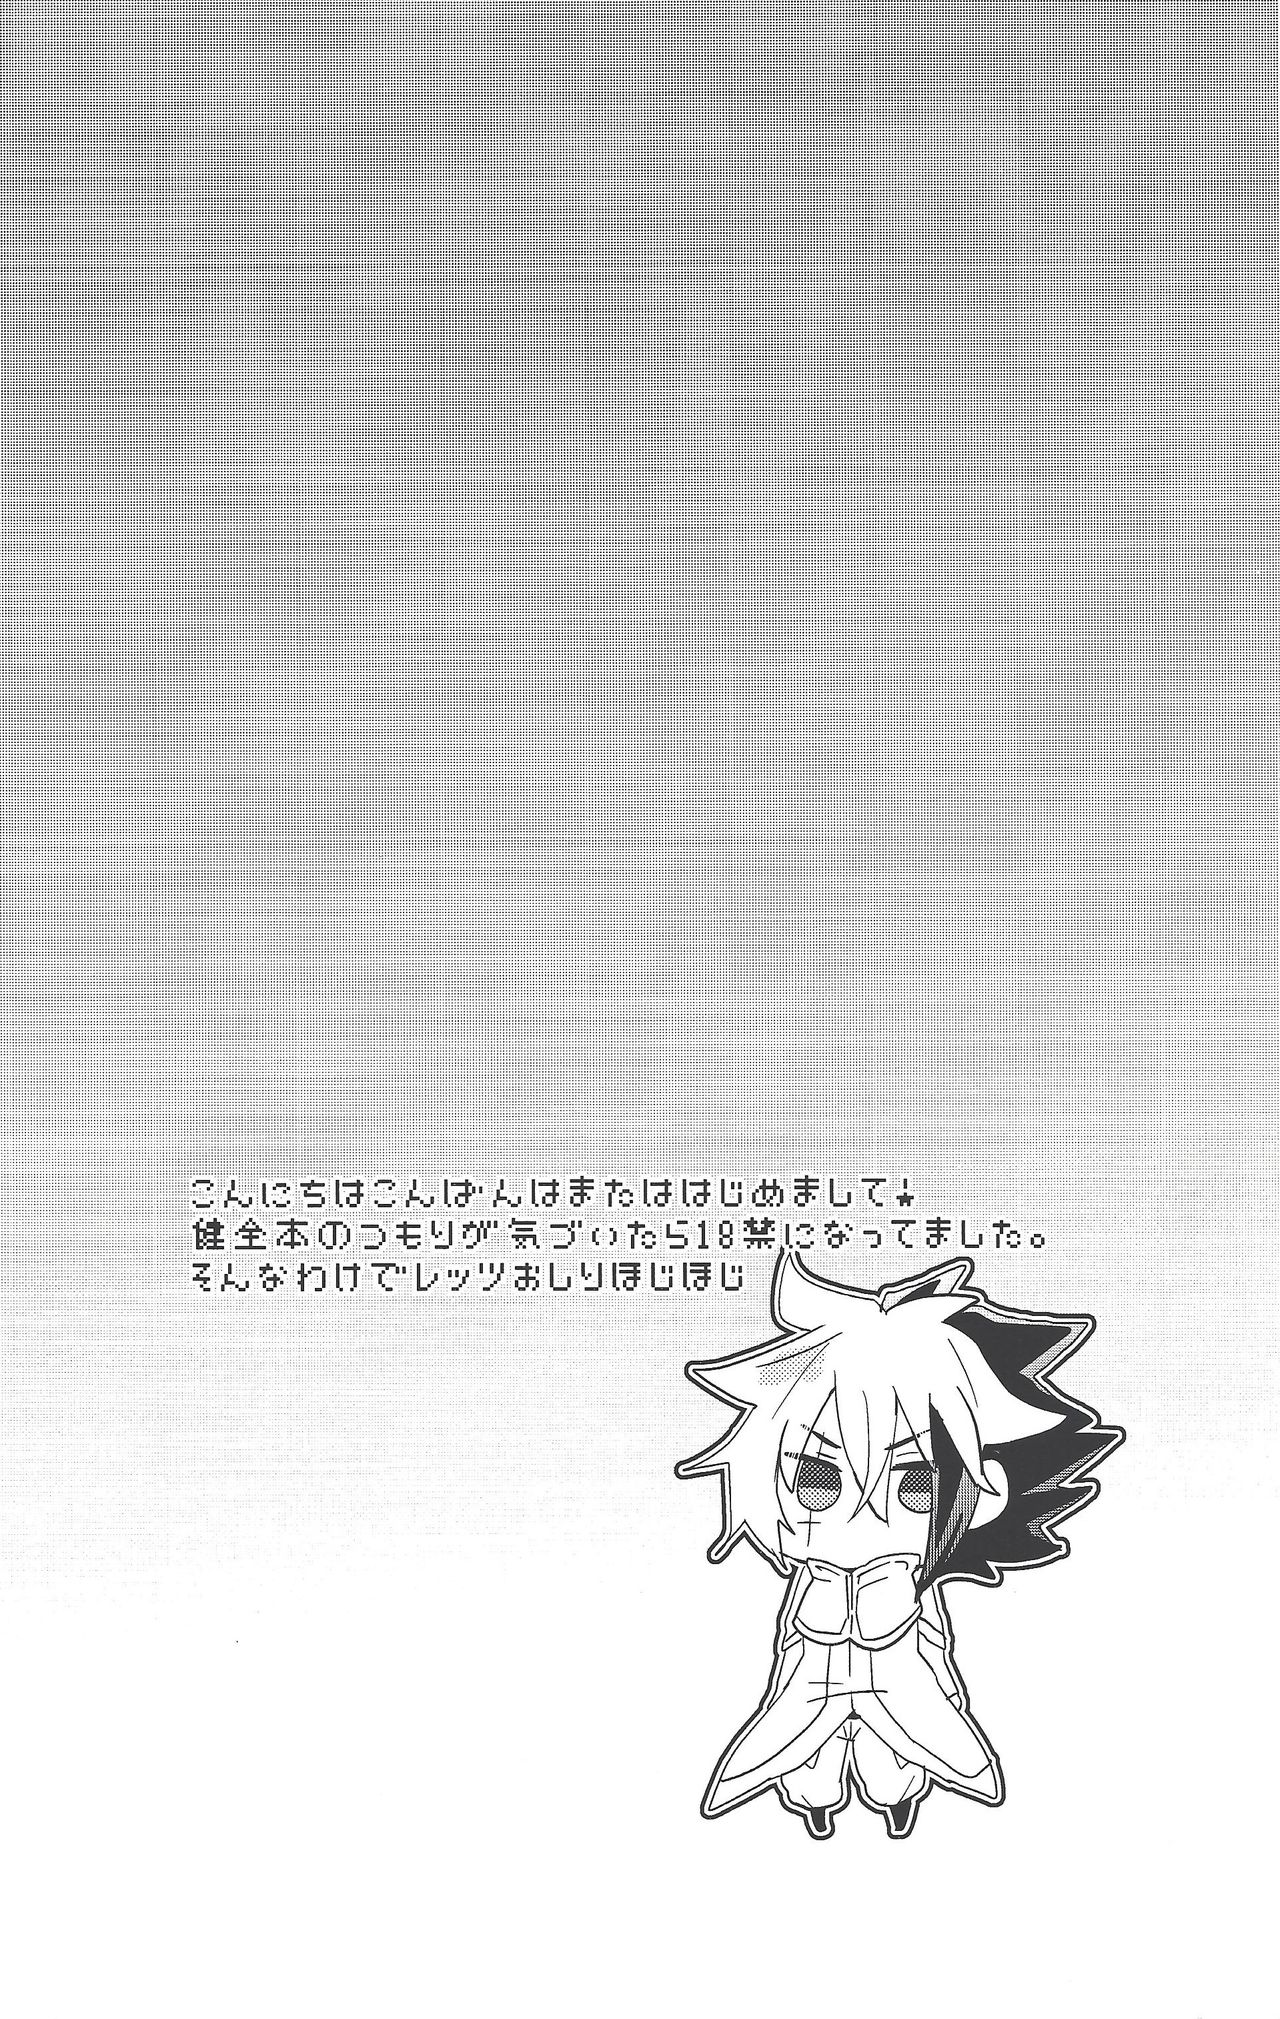 (Sennen Battle Phase 7) [Figure 4 (Yadzu)] Minimamu chanpion (Yu-Gi-Oh! ZEXAL) page 3 full